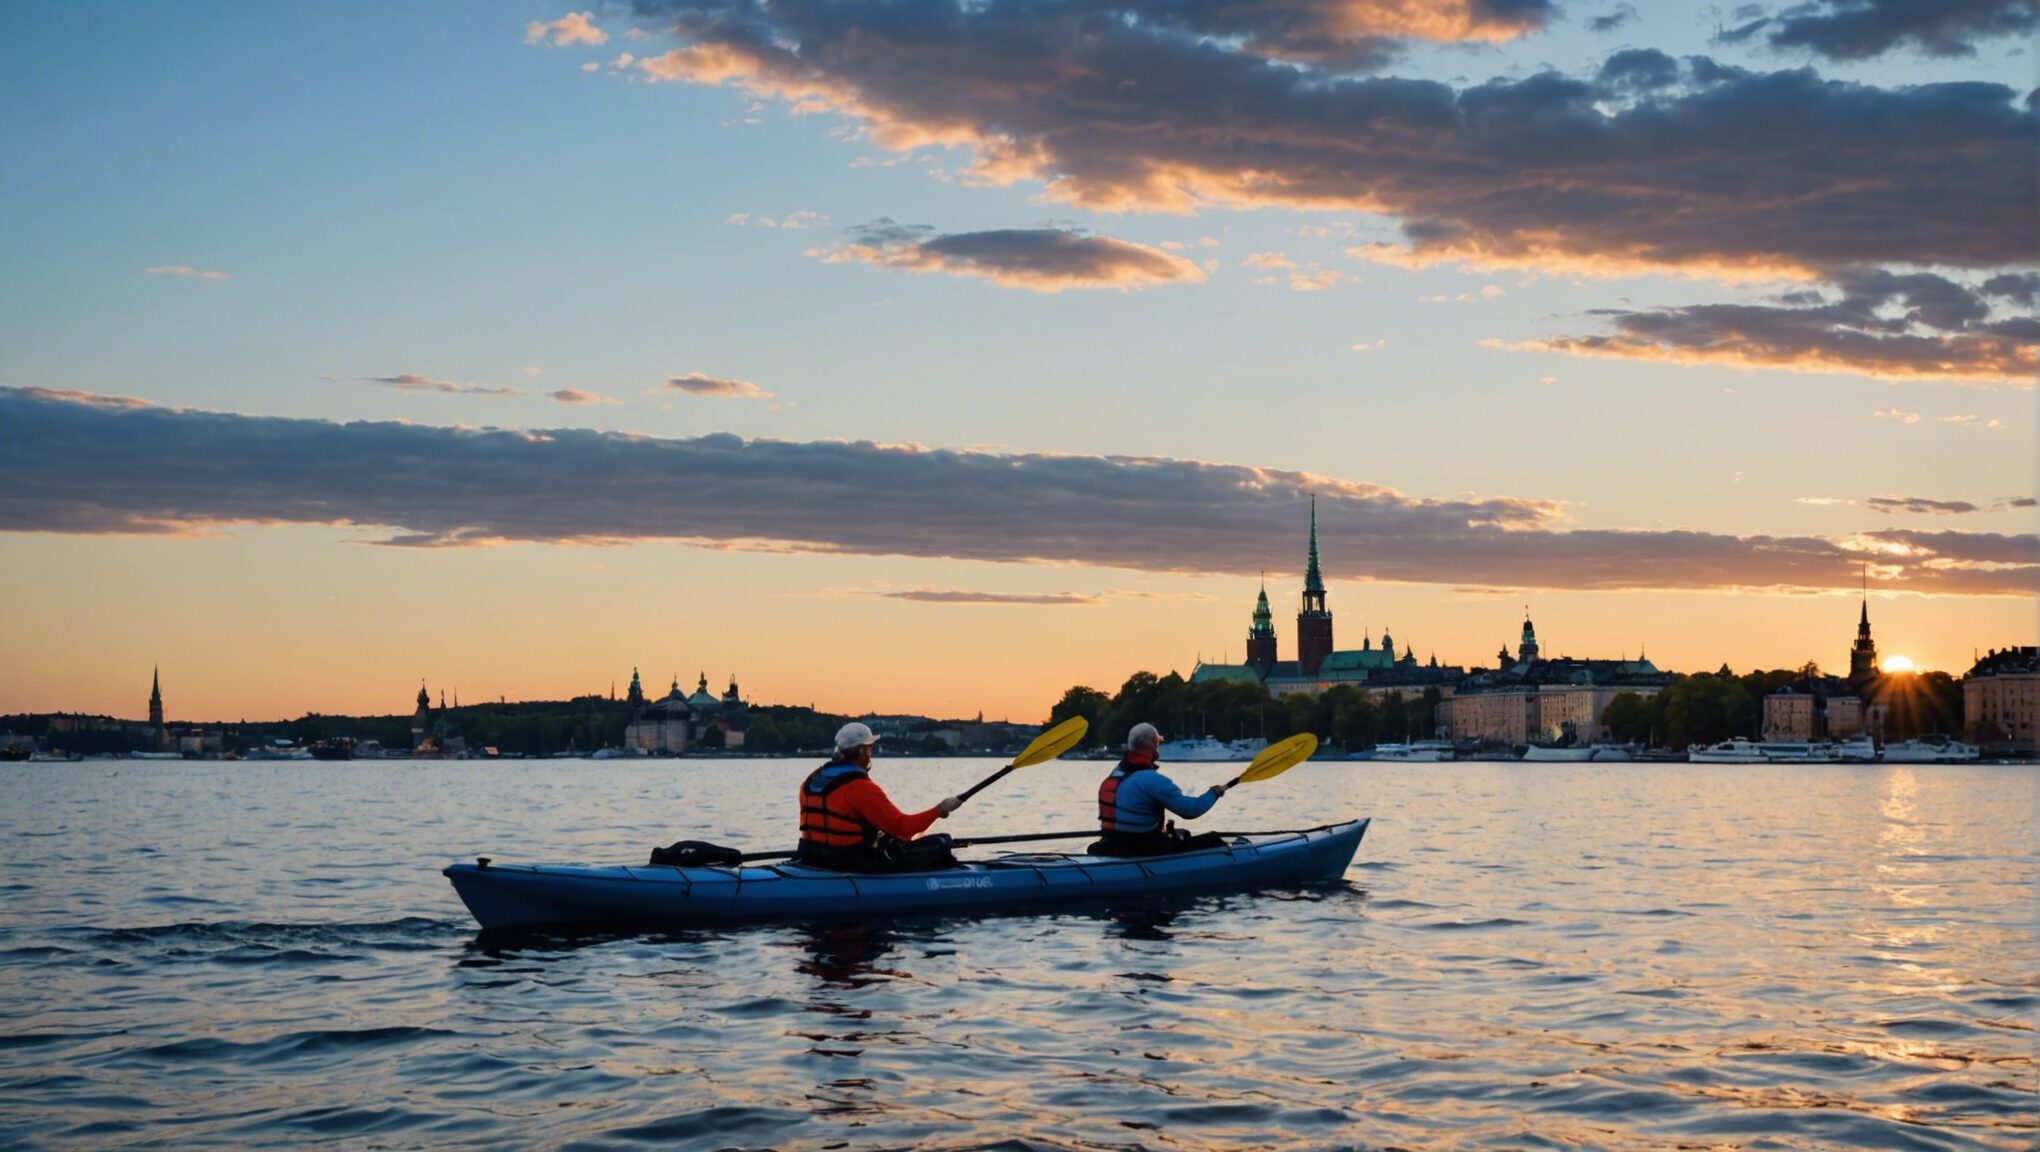 découvrez comment pimenter votre séjour à stockholm avec du kayak et de l'exploration des archipels ! ne manquez pas l'occasion d'explorer une facette dynamique de cette ville réputée pour sa tranquillité.